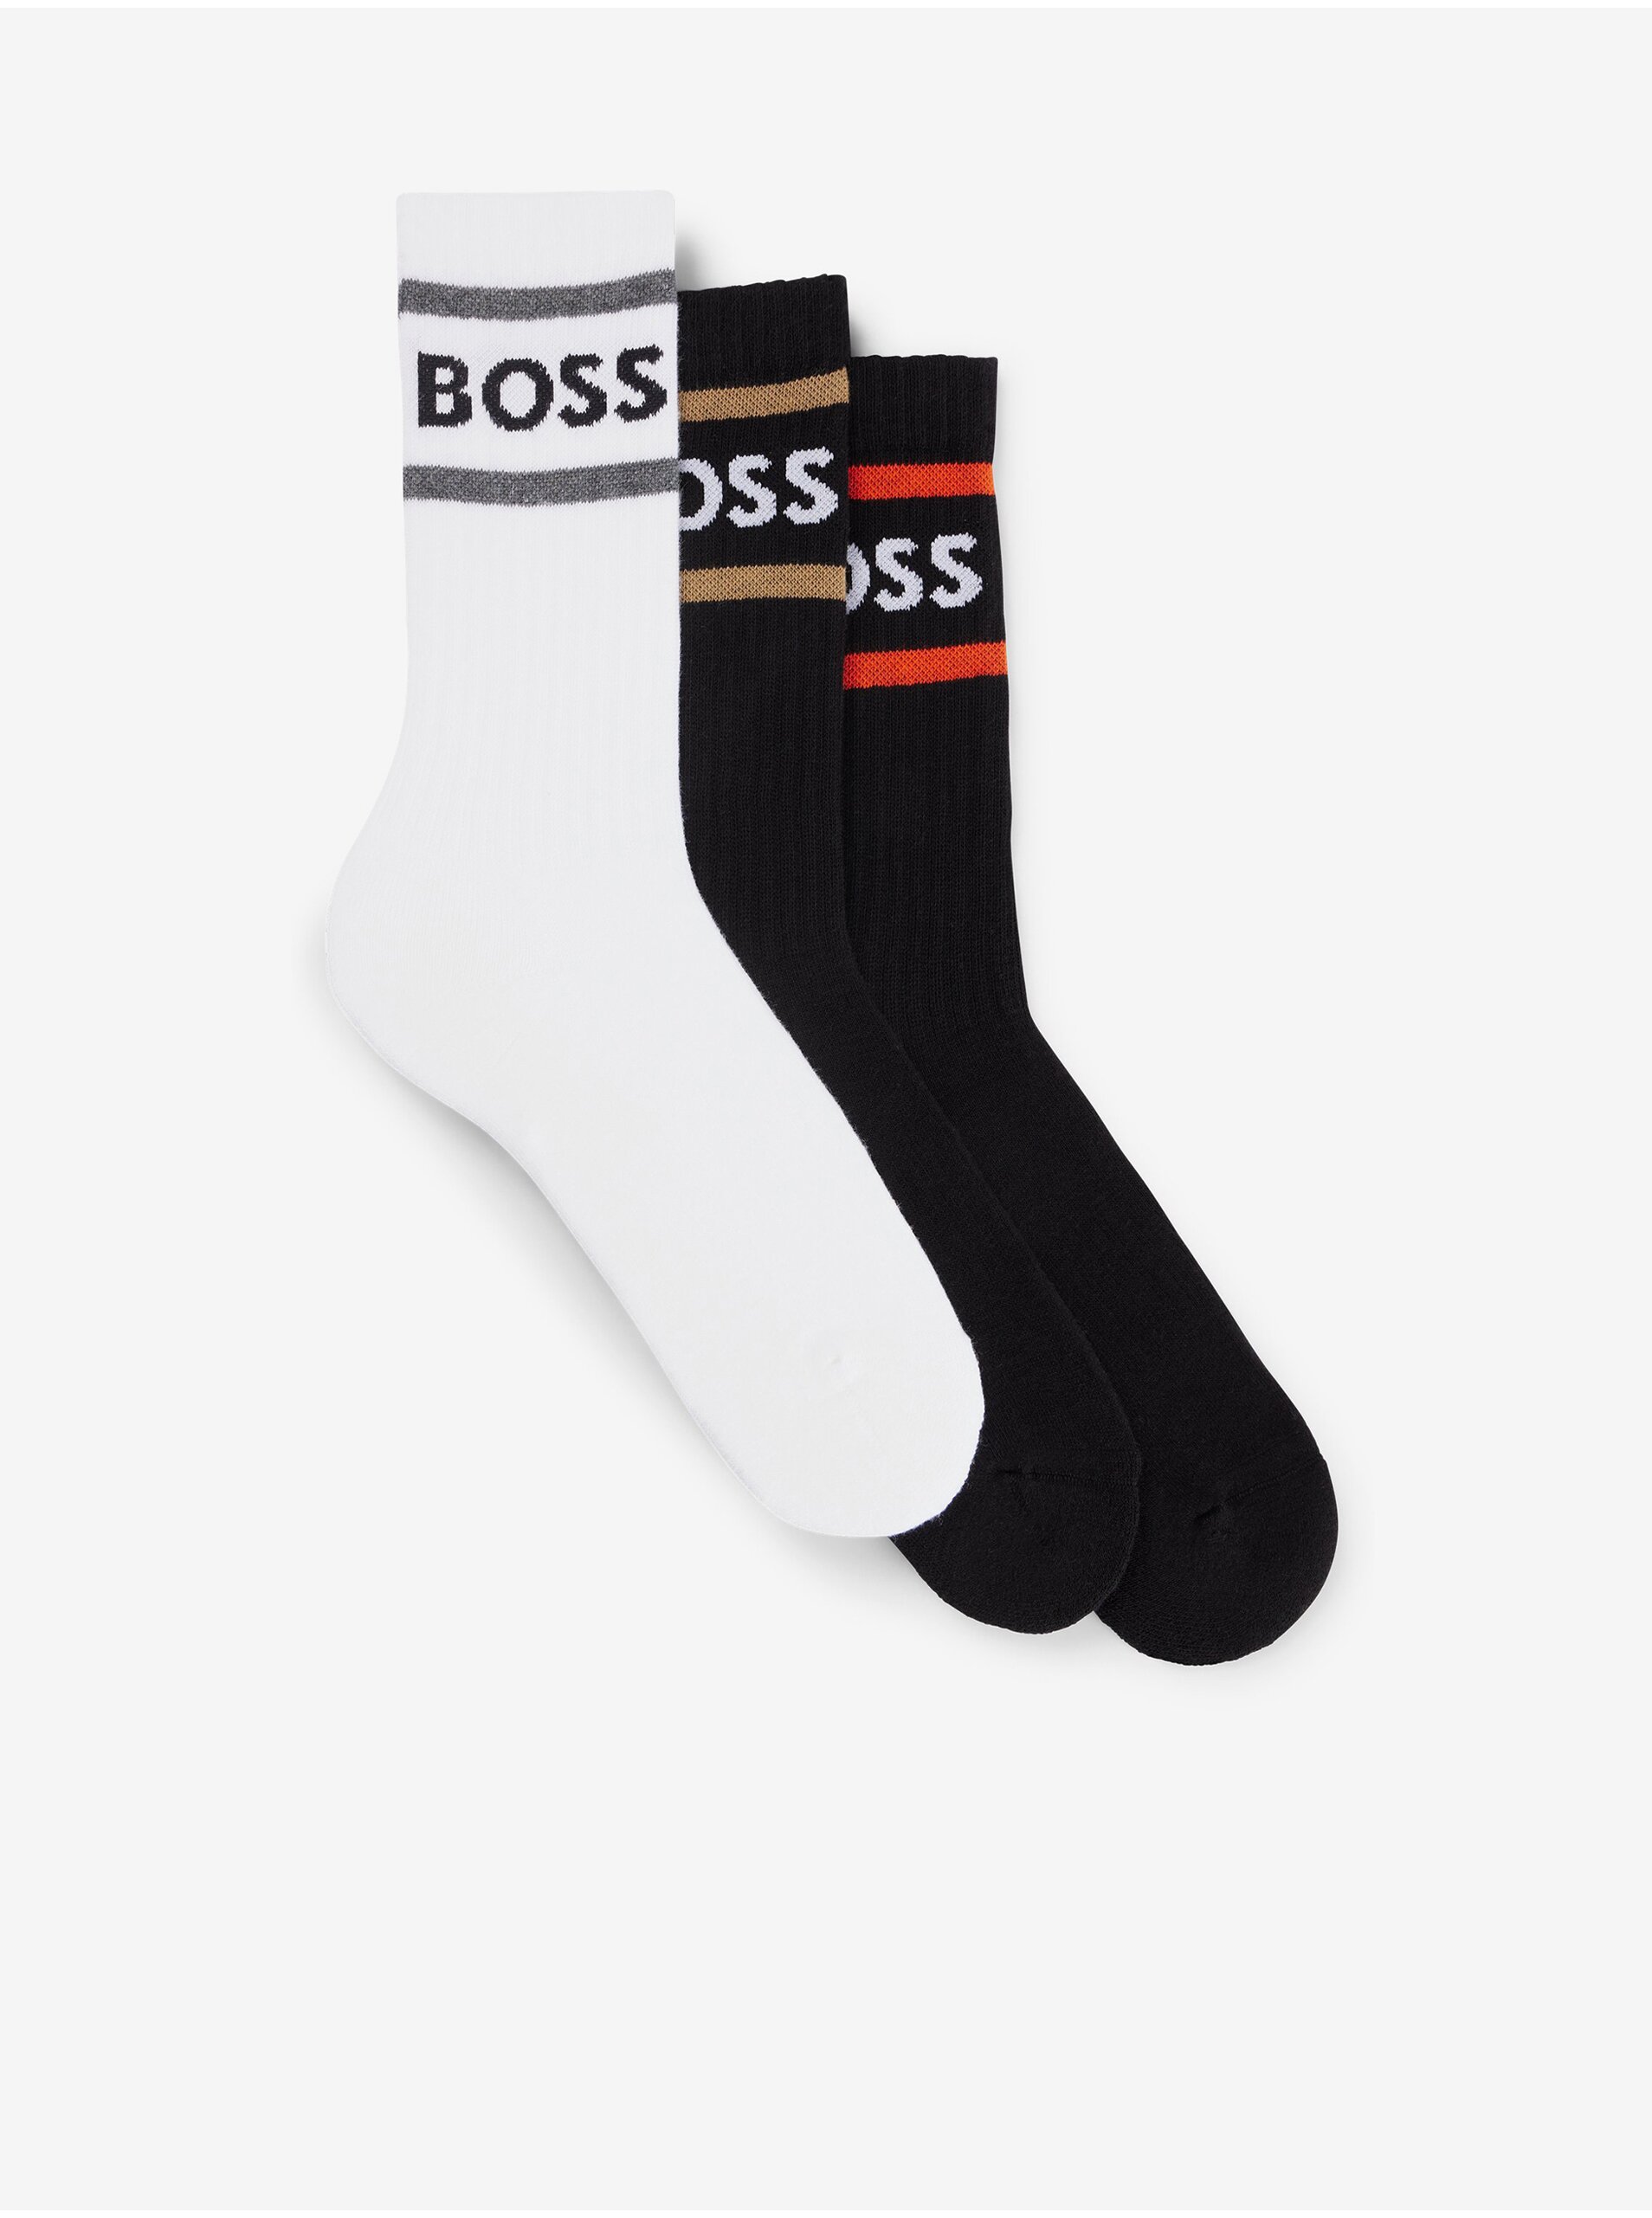 Lacno Súprava troch párov pánskych ponožiek v čiernej a bielej farbe Hugo Boss